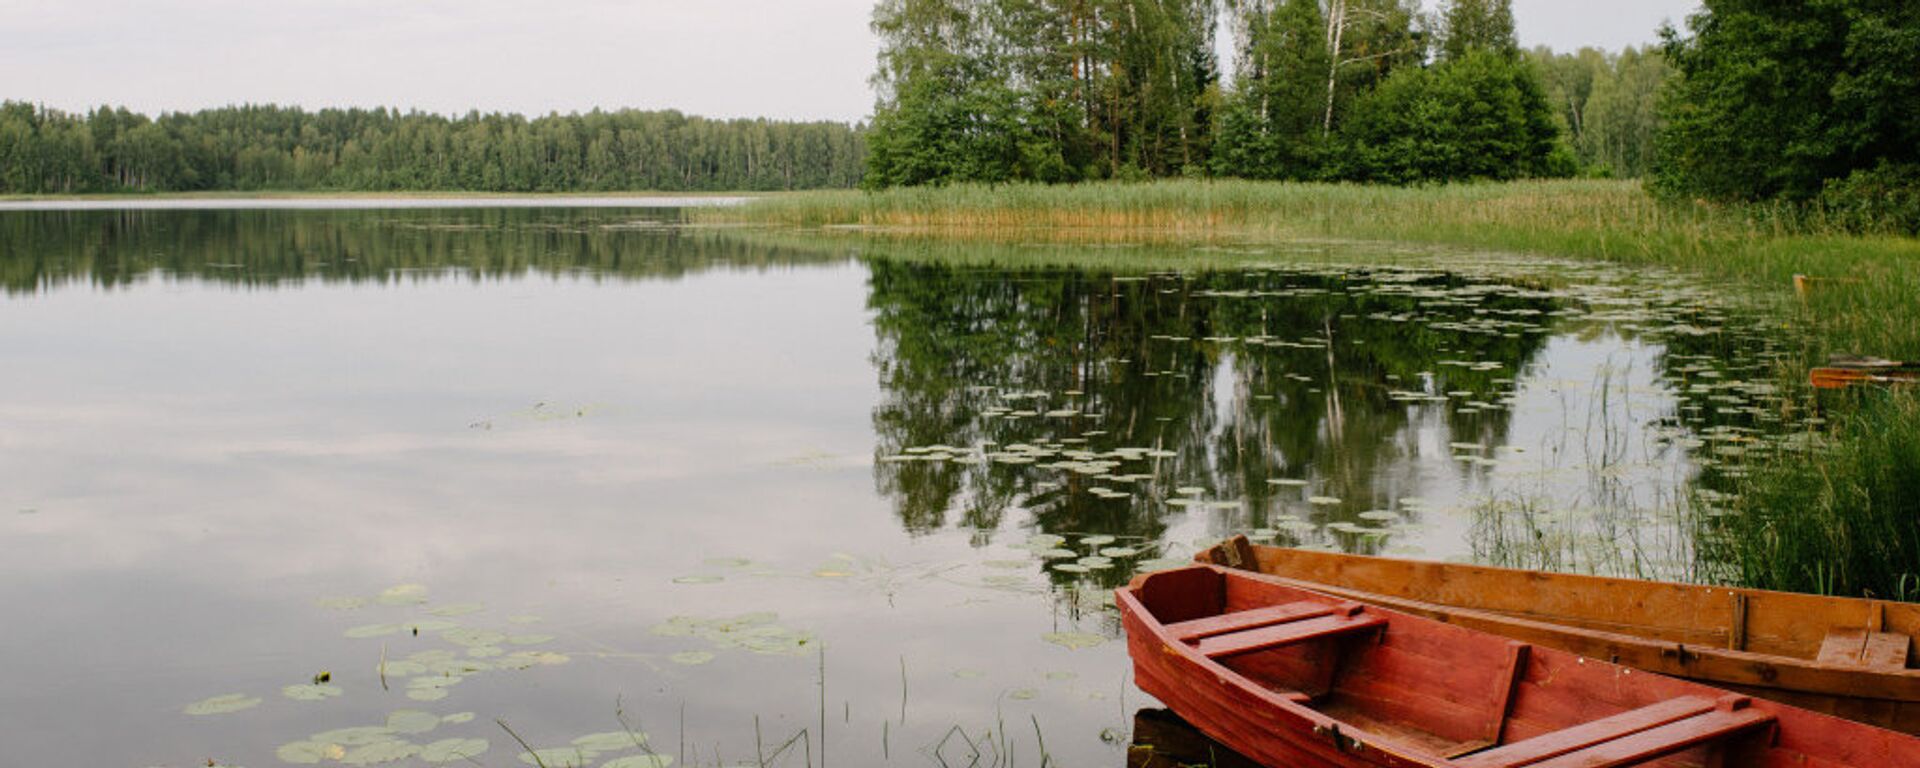 Лодки на лесном озере в Латгалии - Sputnik Латвия, 1920, 19.06.2021